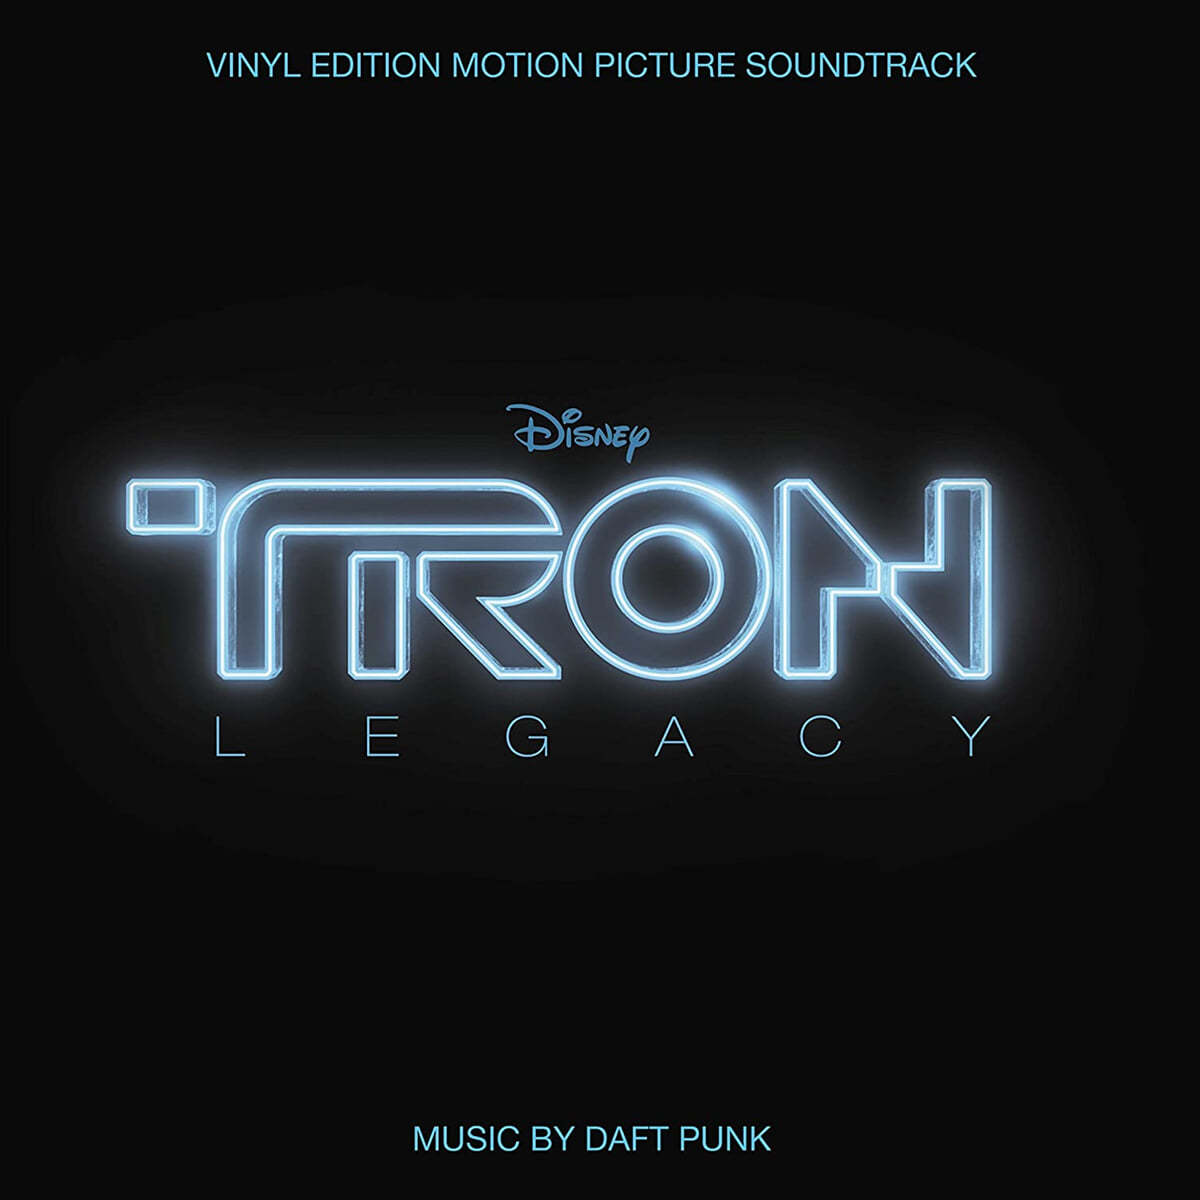 트론: 새로운 시작 영화음악 (Tron: Legacy OST by Daft Punk 다프트 펑크) [2LP] 